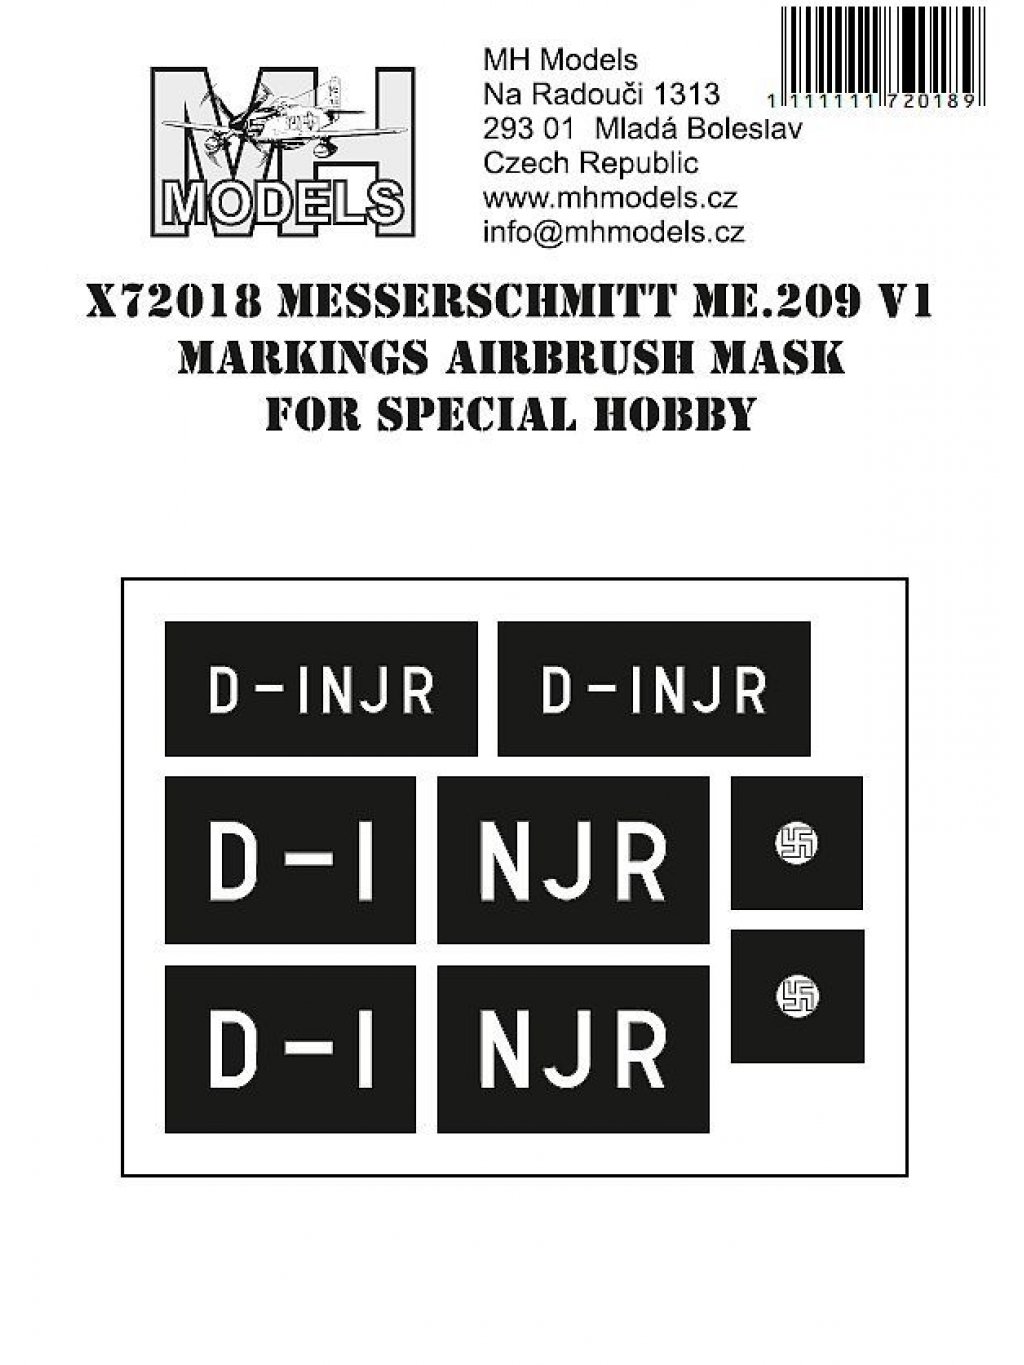 Messeschmitt Me.209 V1 Markimgs airbrush mask for Special Hobby